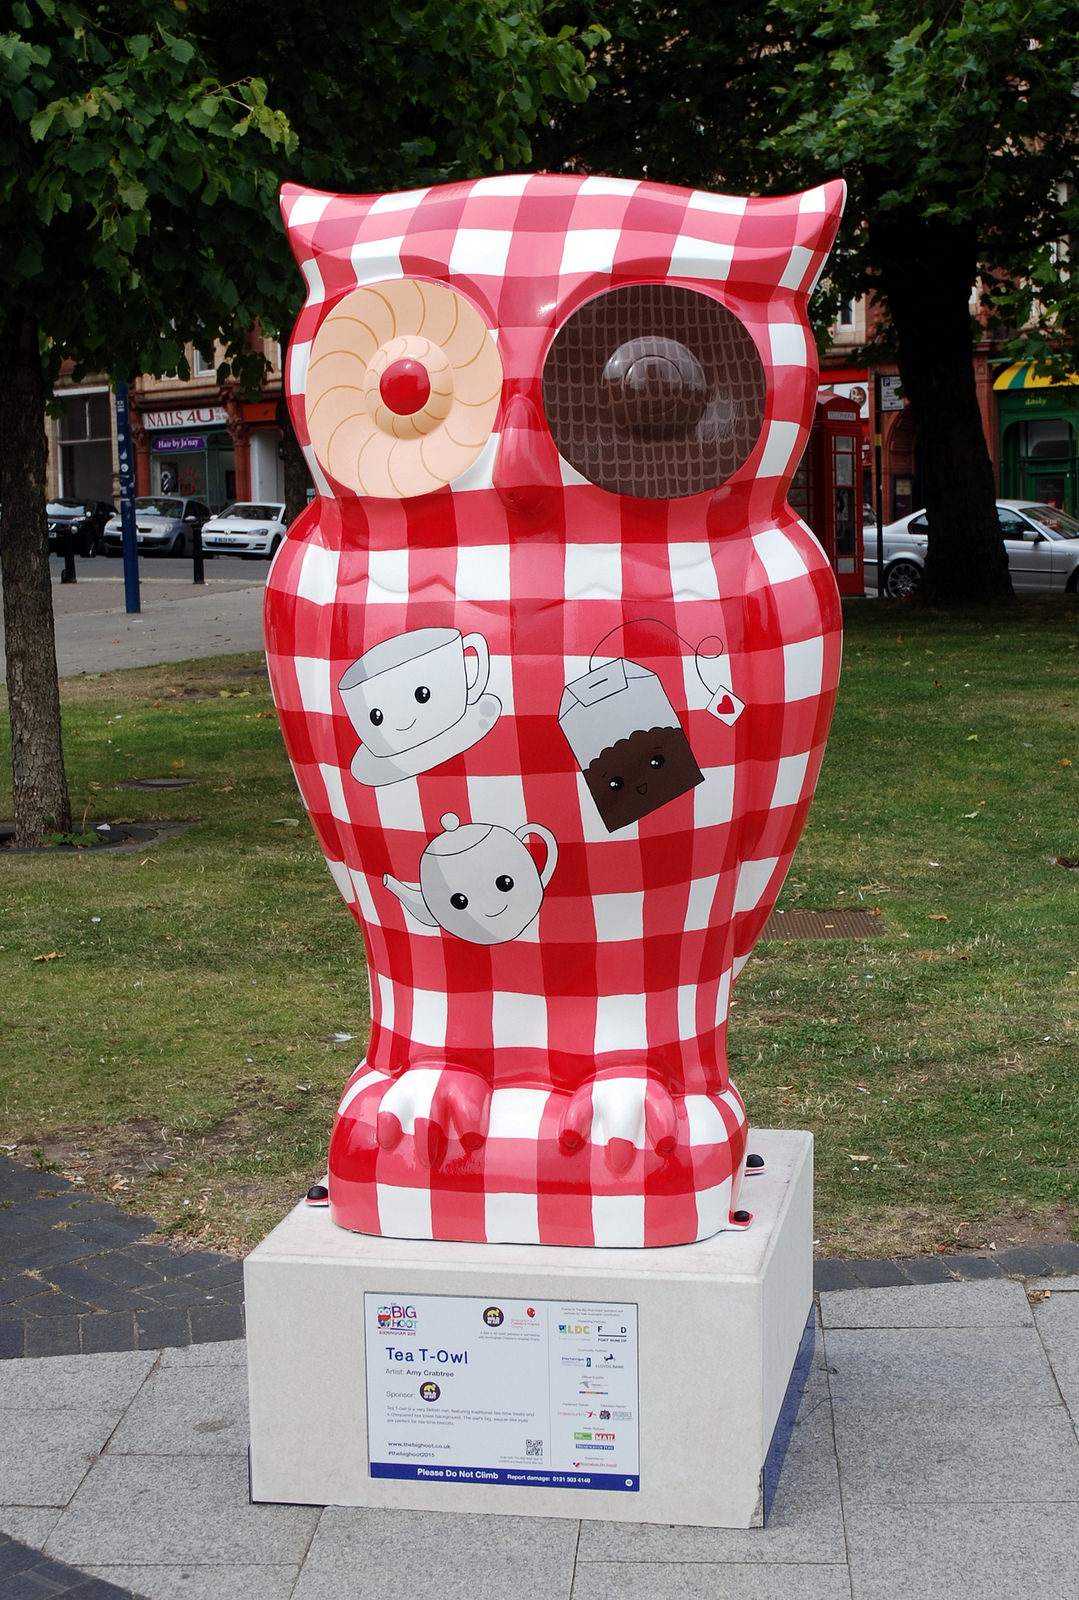 big hoot4 The 2015 Big Hoot Owls in Birmingham